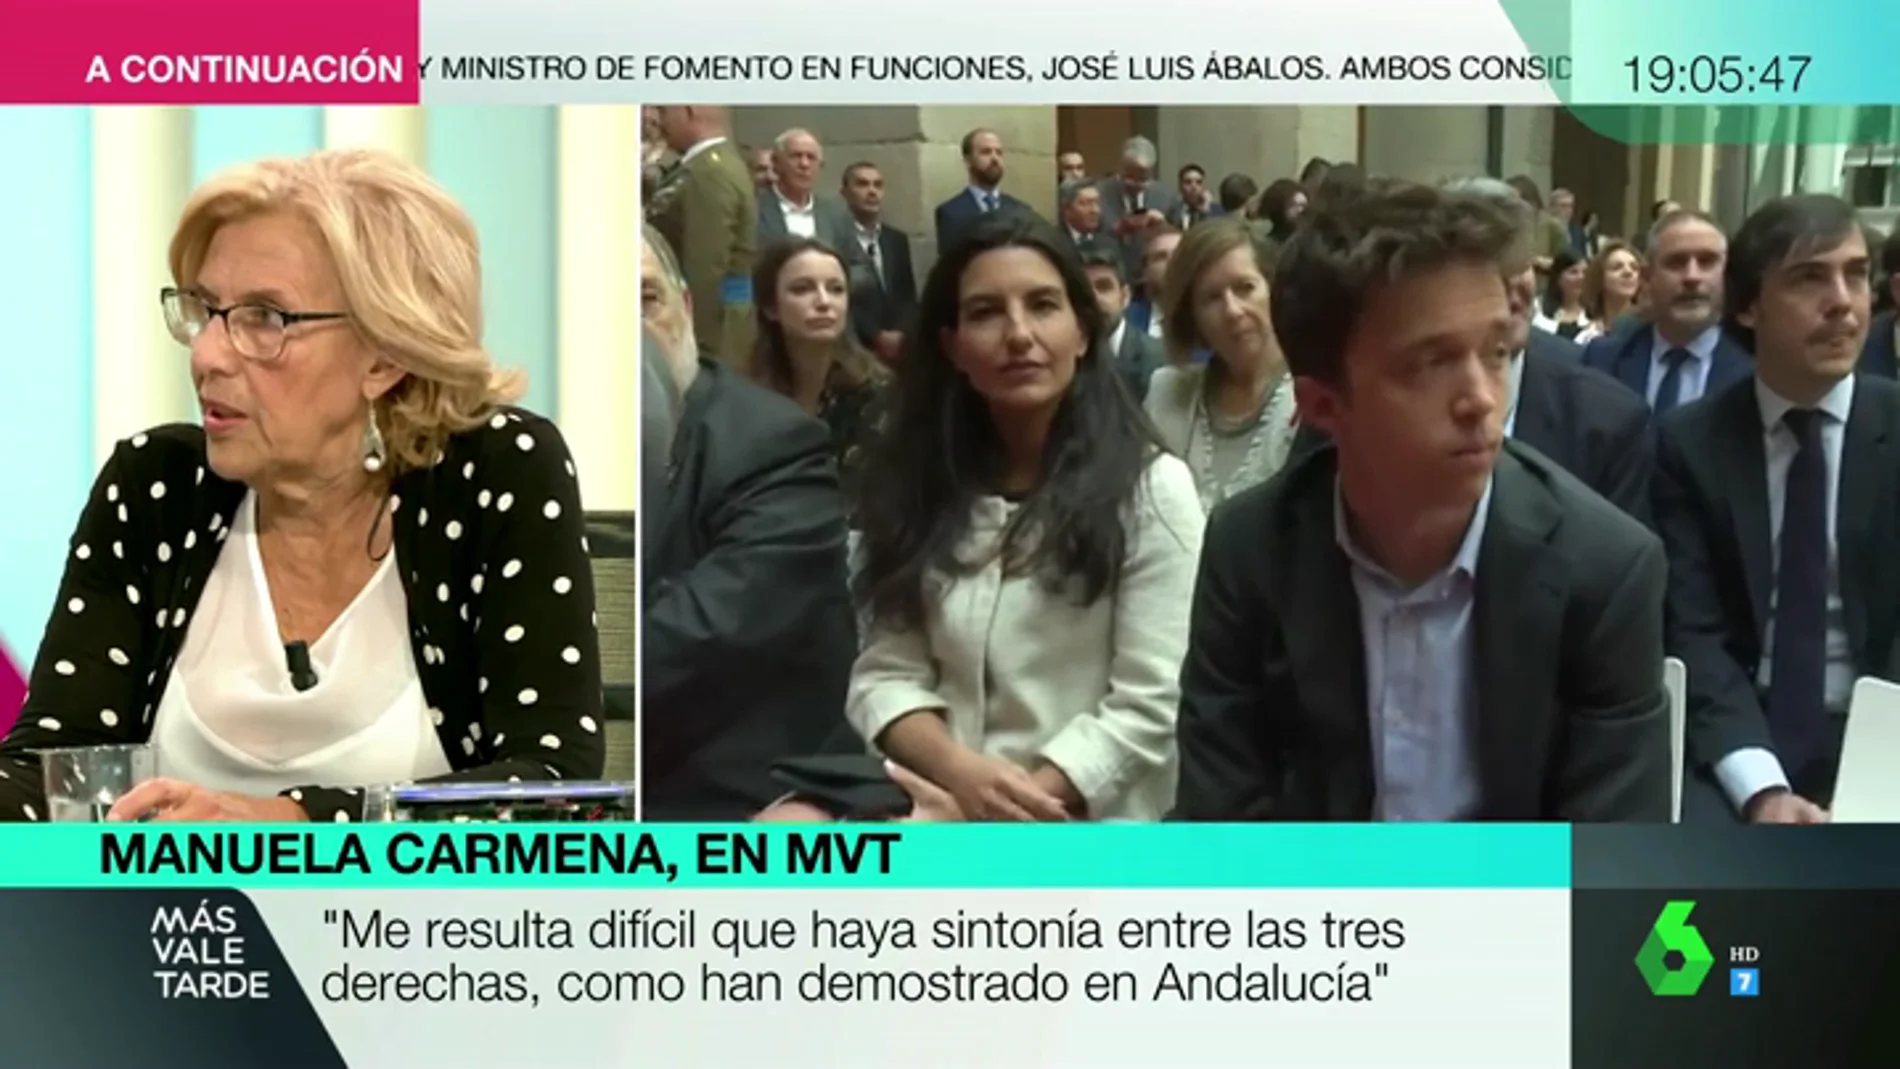 Manuela Carmena: "No puede ser una opción que el feminismo pueda apoyar candidaturas como Vox"